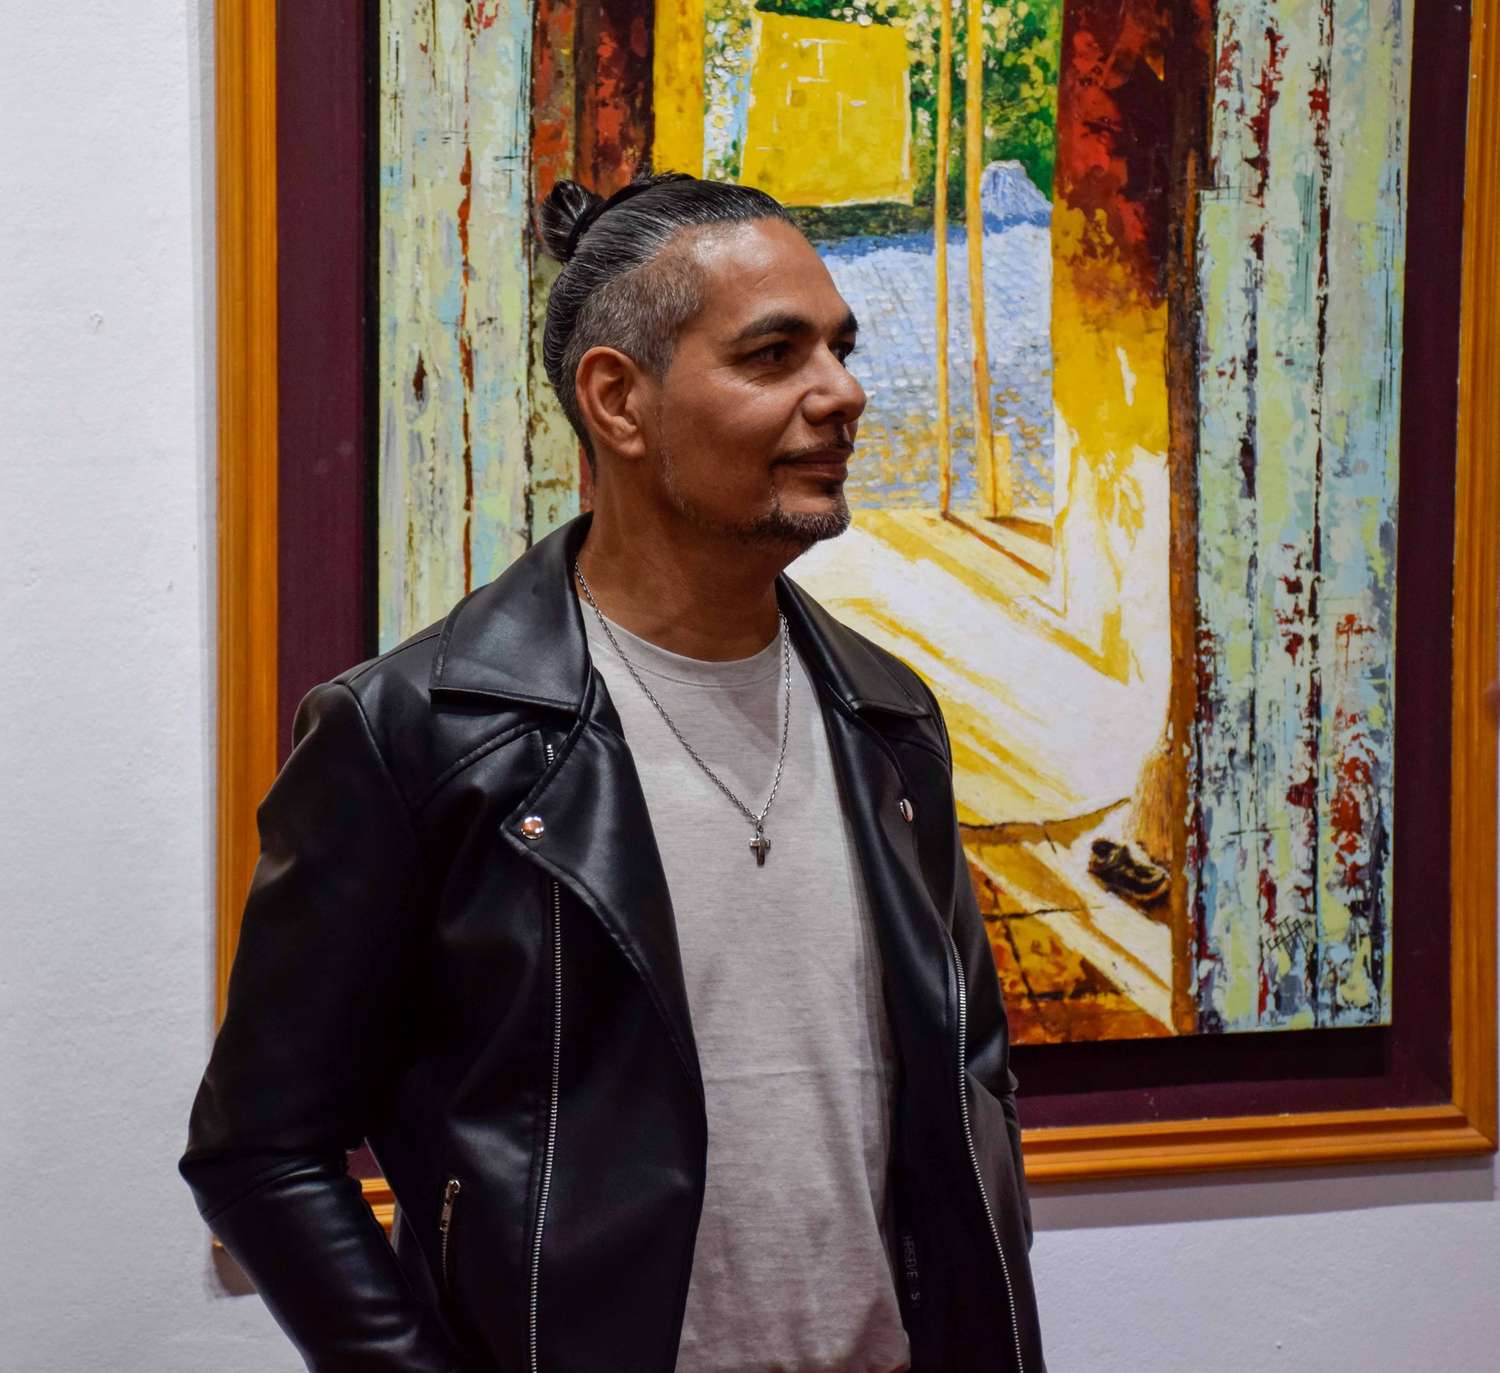 El artista visual Sergio Caffarena expone en Gualeguaychú